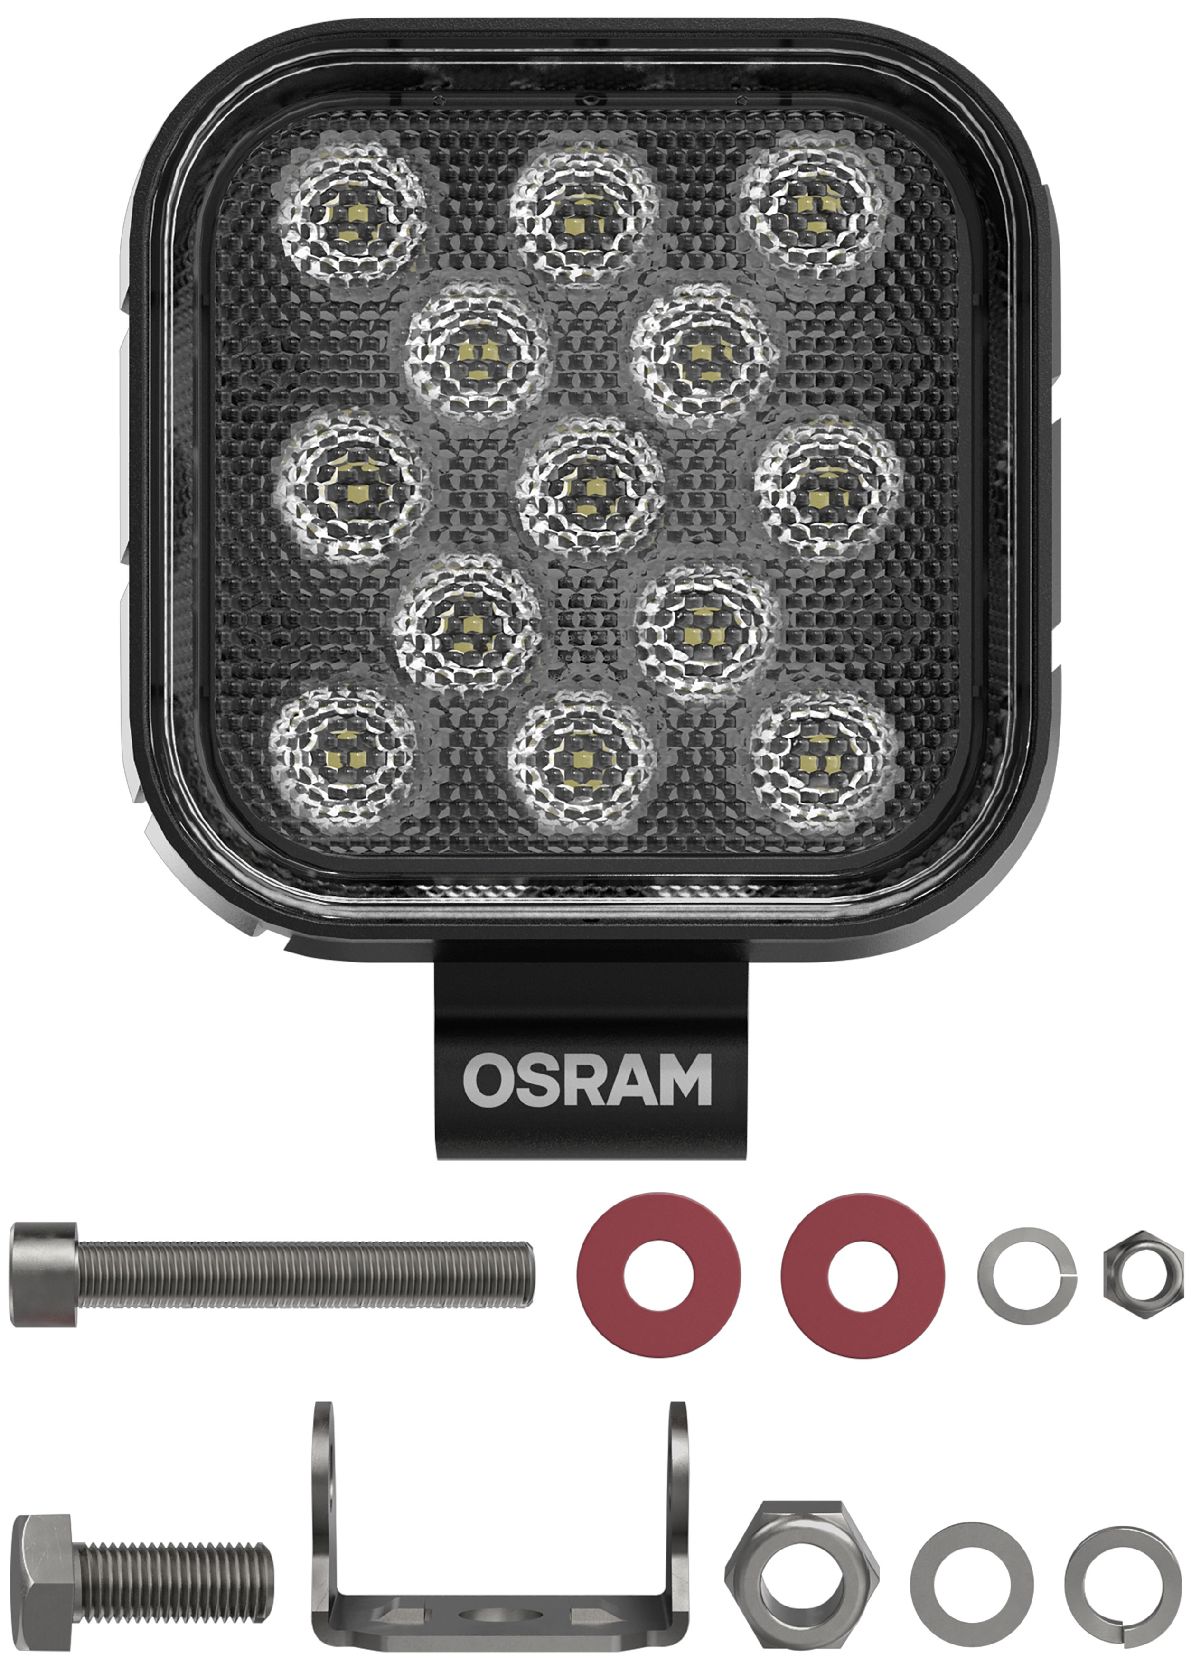 Osram LEDriving REVERSING FX120S-WD 12-24V/1100Lumen/2700Kelvin